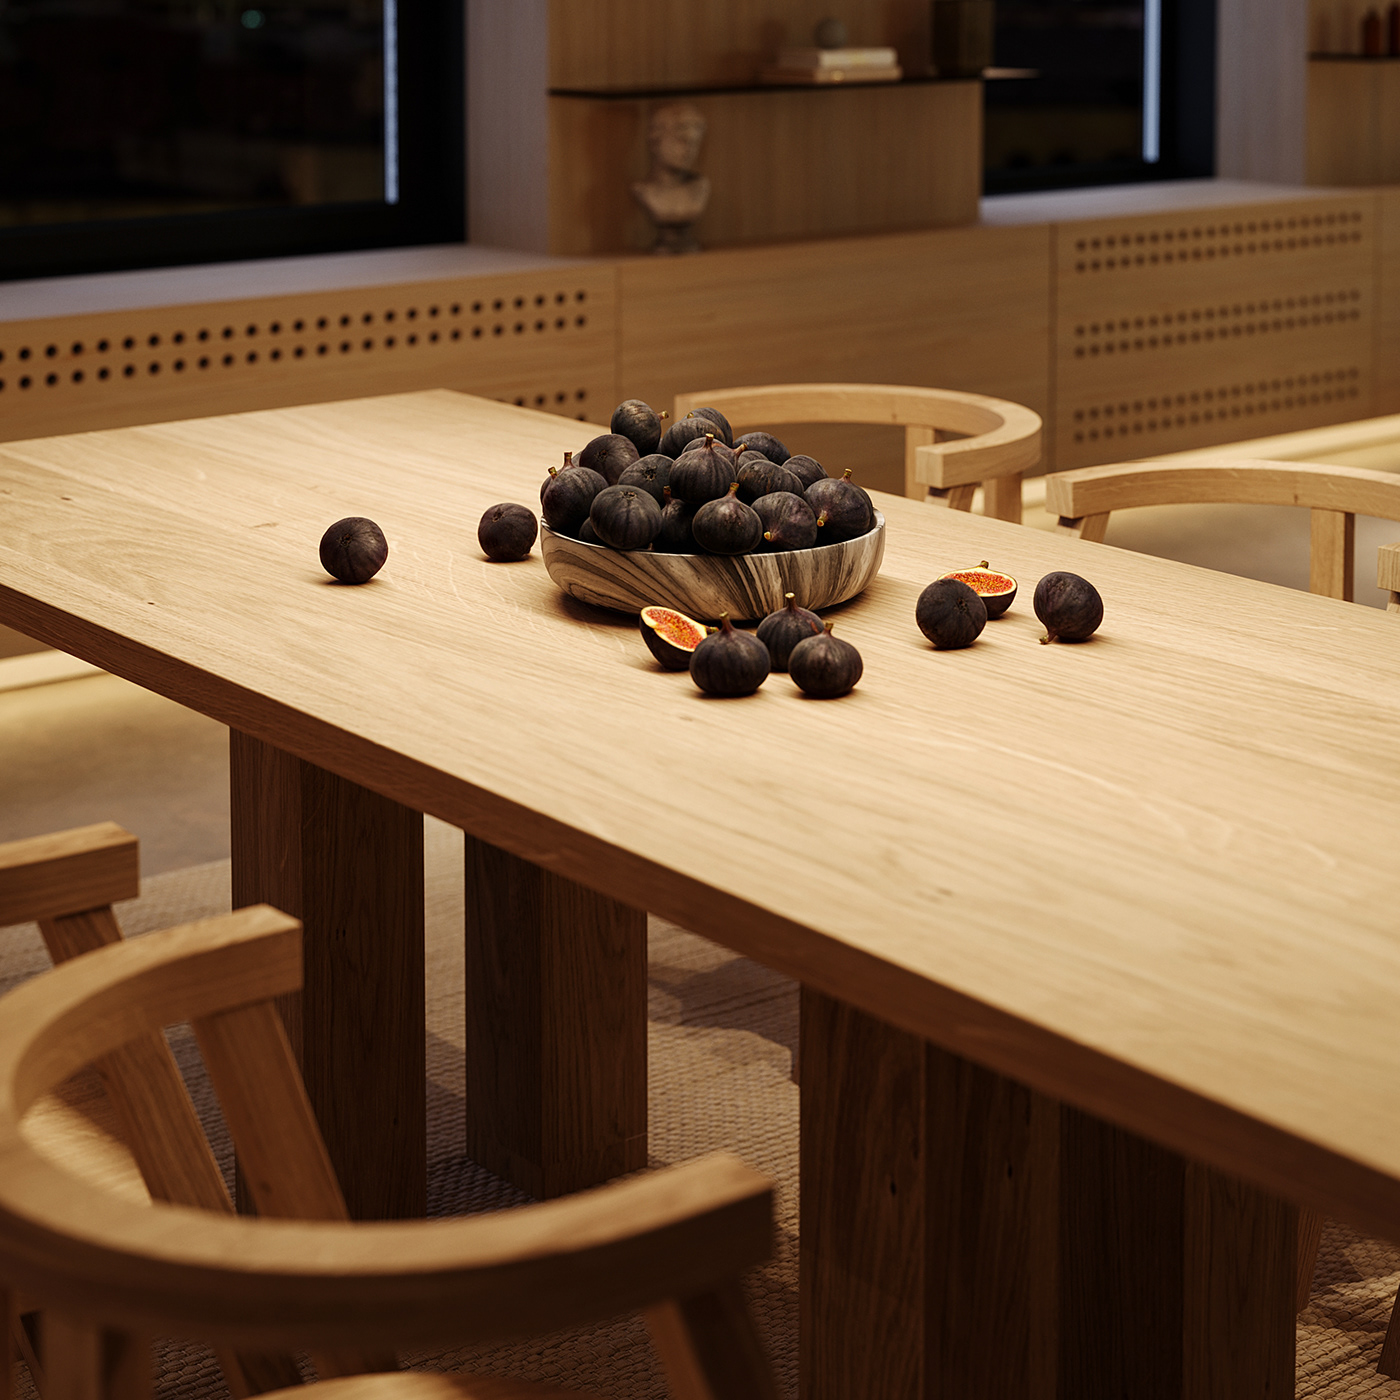 Khu vực ăn uống với bộ bàn ghế gỗ thiết kế tối giản nhưng thu hút.